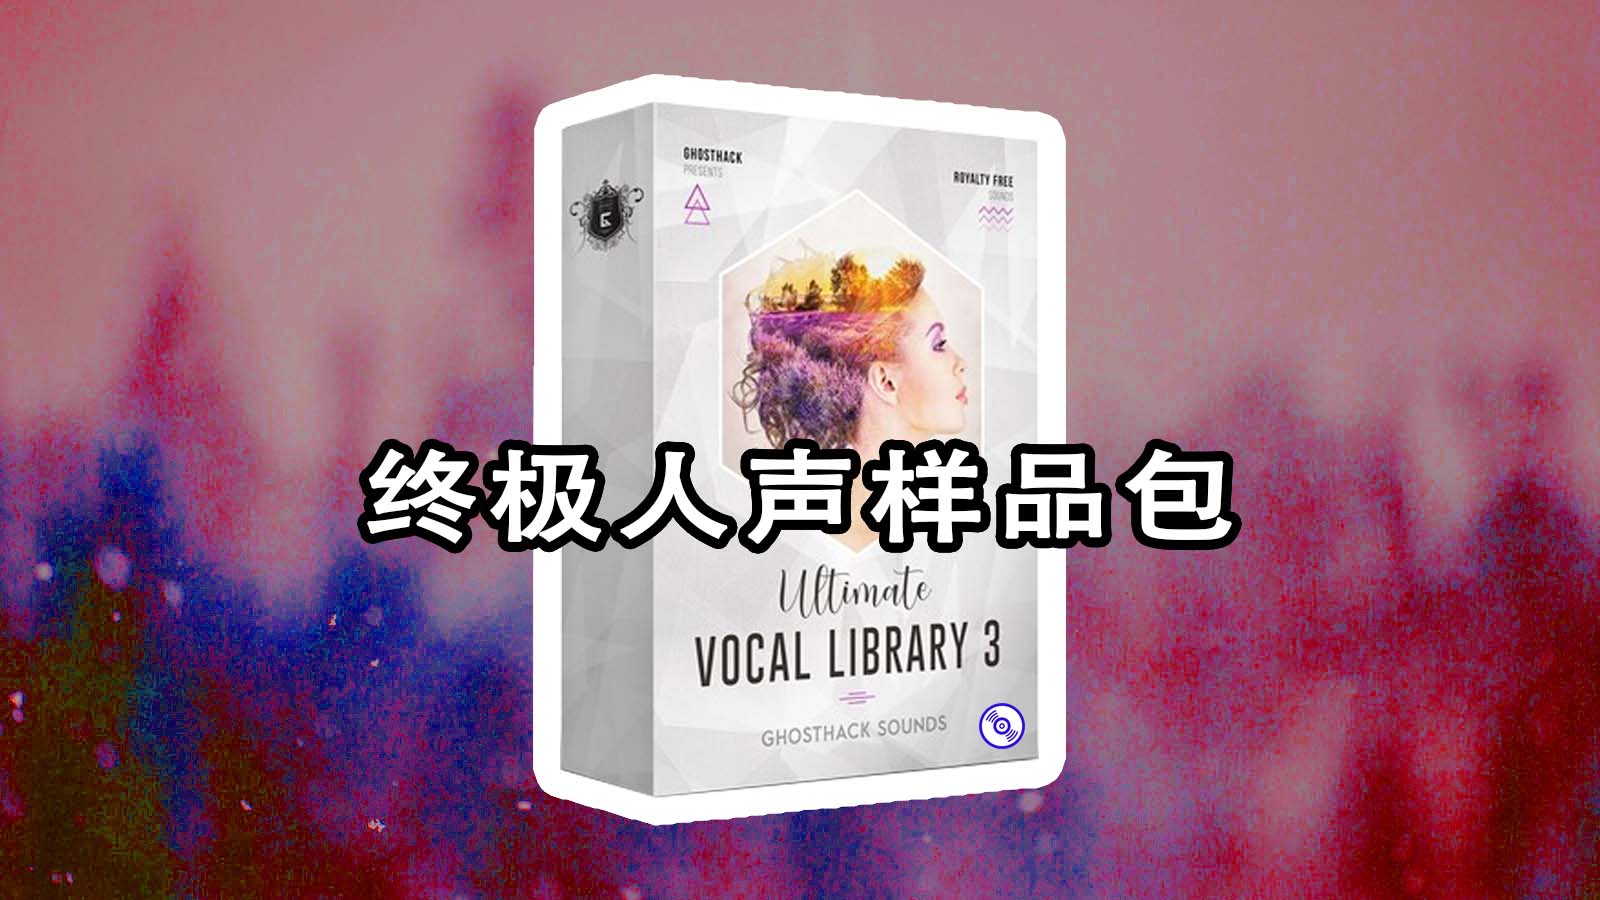 价值399美元终极人声样品包+全套奖金 Ghosthack – Ultimate Vocal Library 3 人声采样包下载！